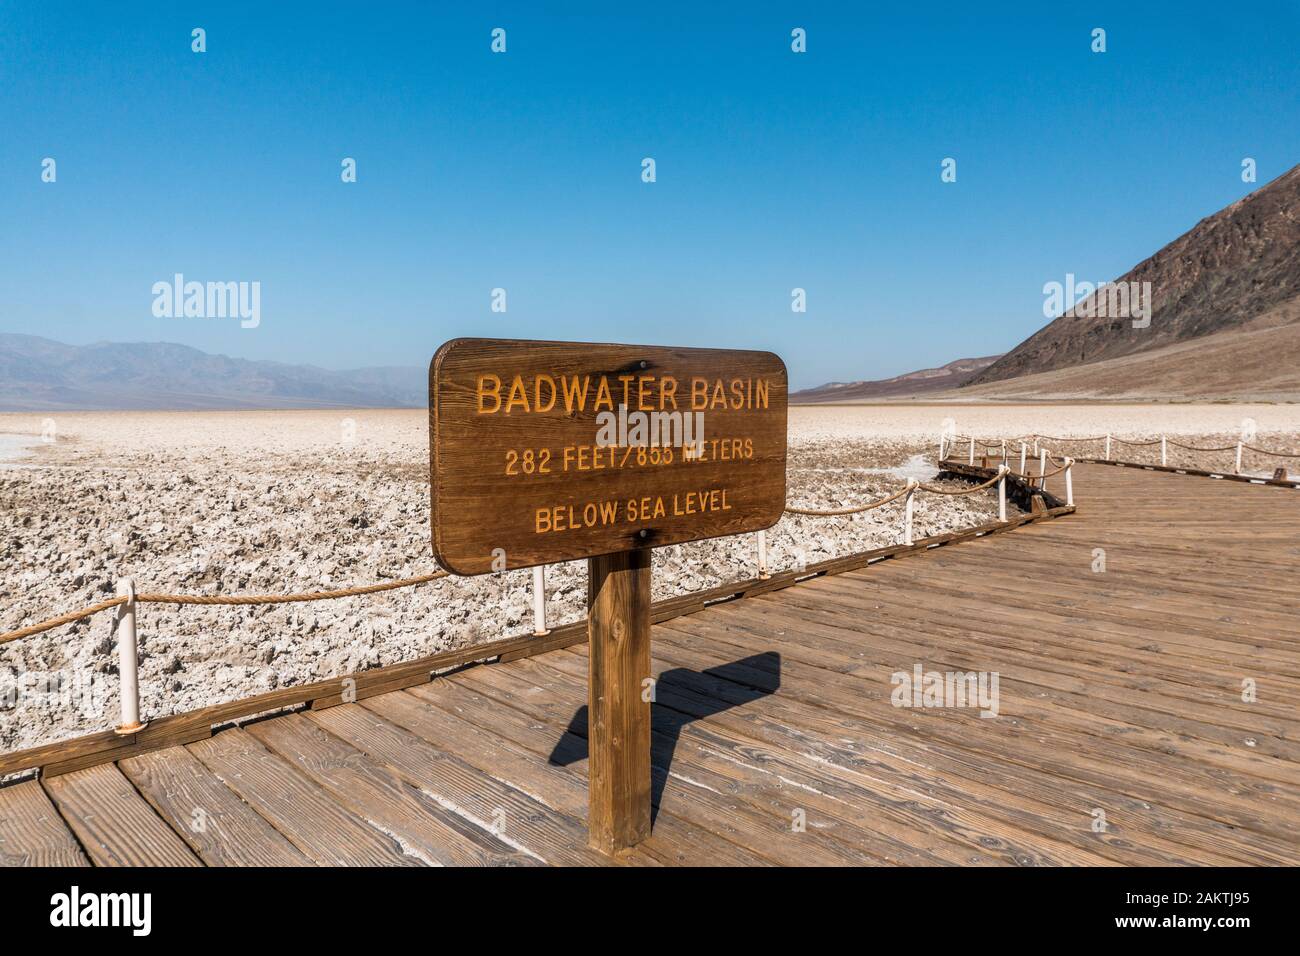 Der Todes-Valley-Nationalpark befindet sich in der Mojave-Wüste und ist der am stärksten rieselende Nationalpark der Vereinigten Staaten und einer der heißesten Orte der Erde Stockfoto